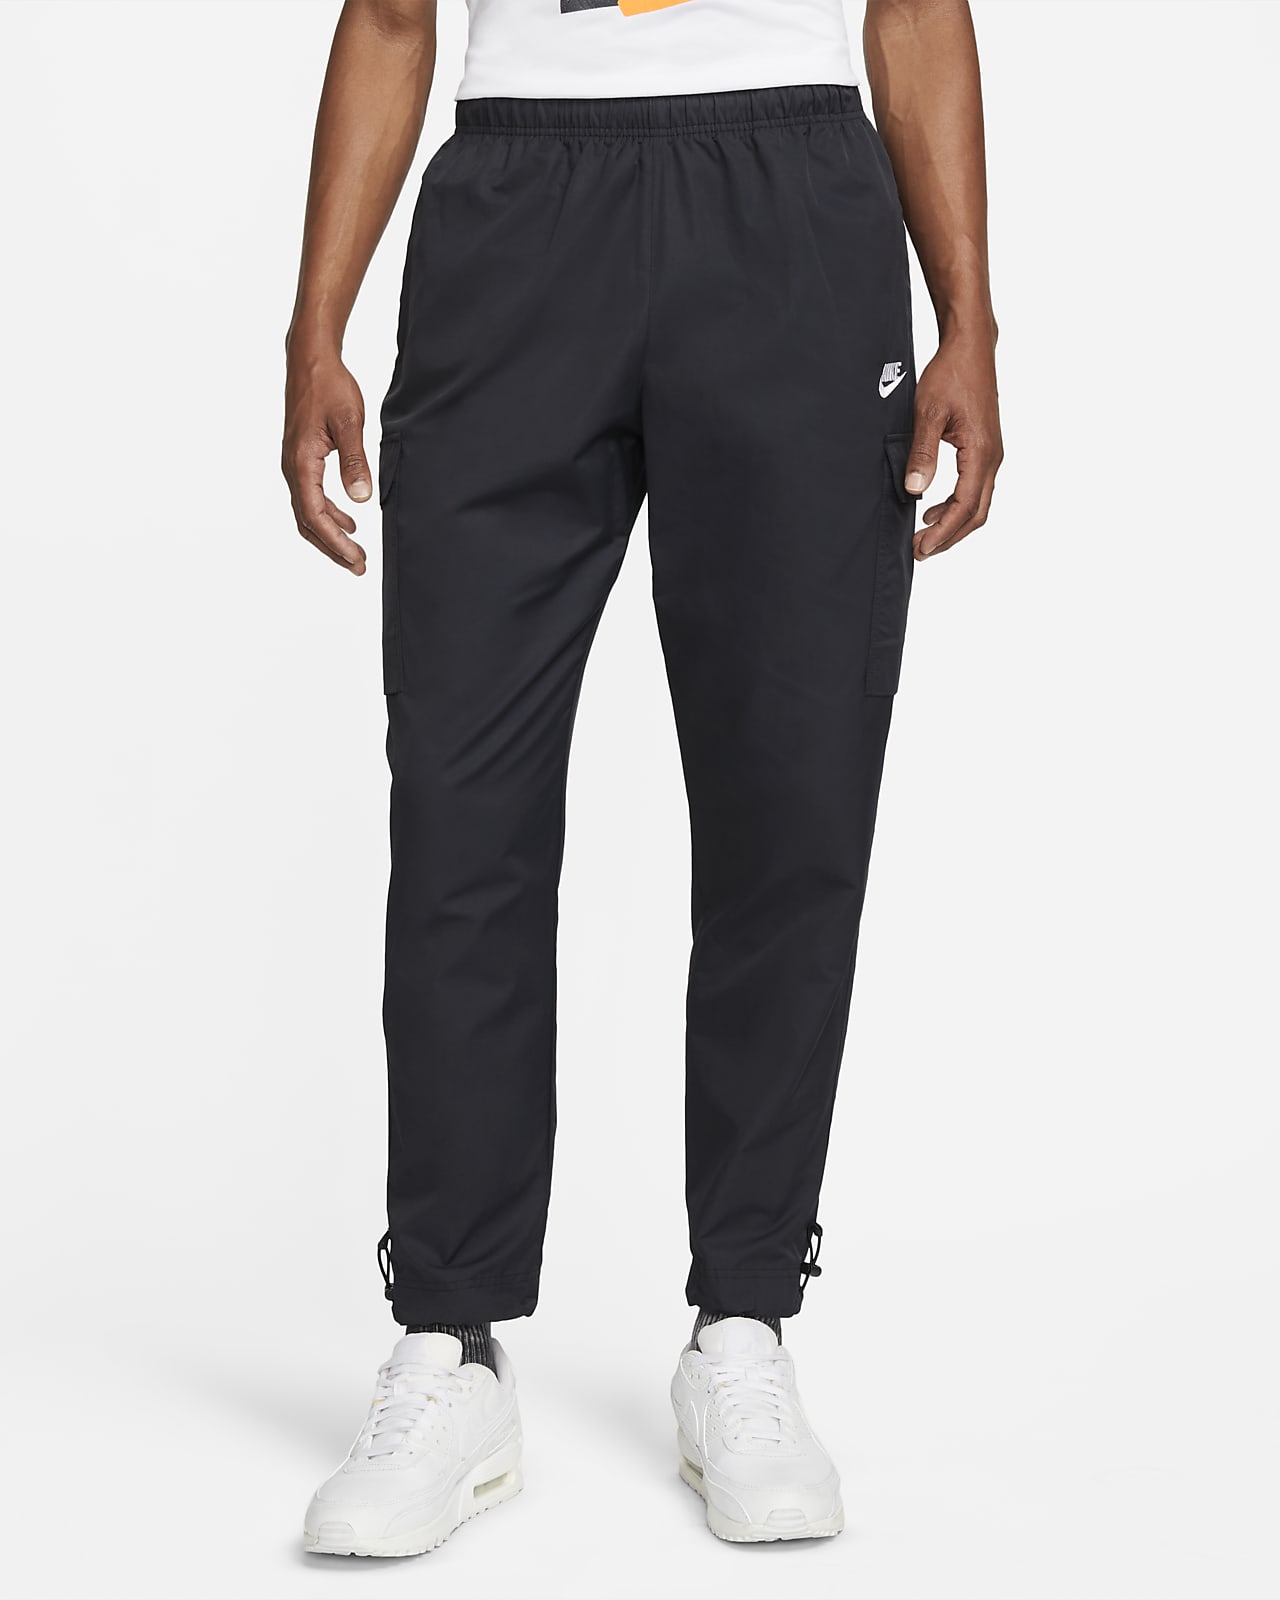 Pantalon tissé Nike Sportswear Repeat pour Homme